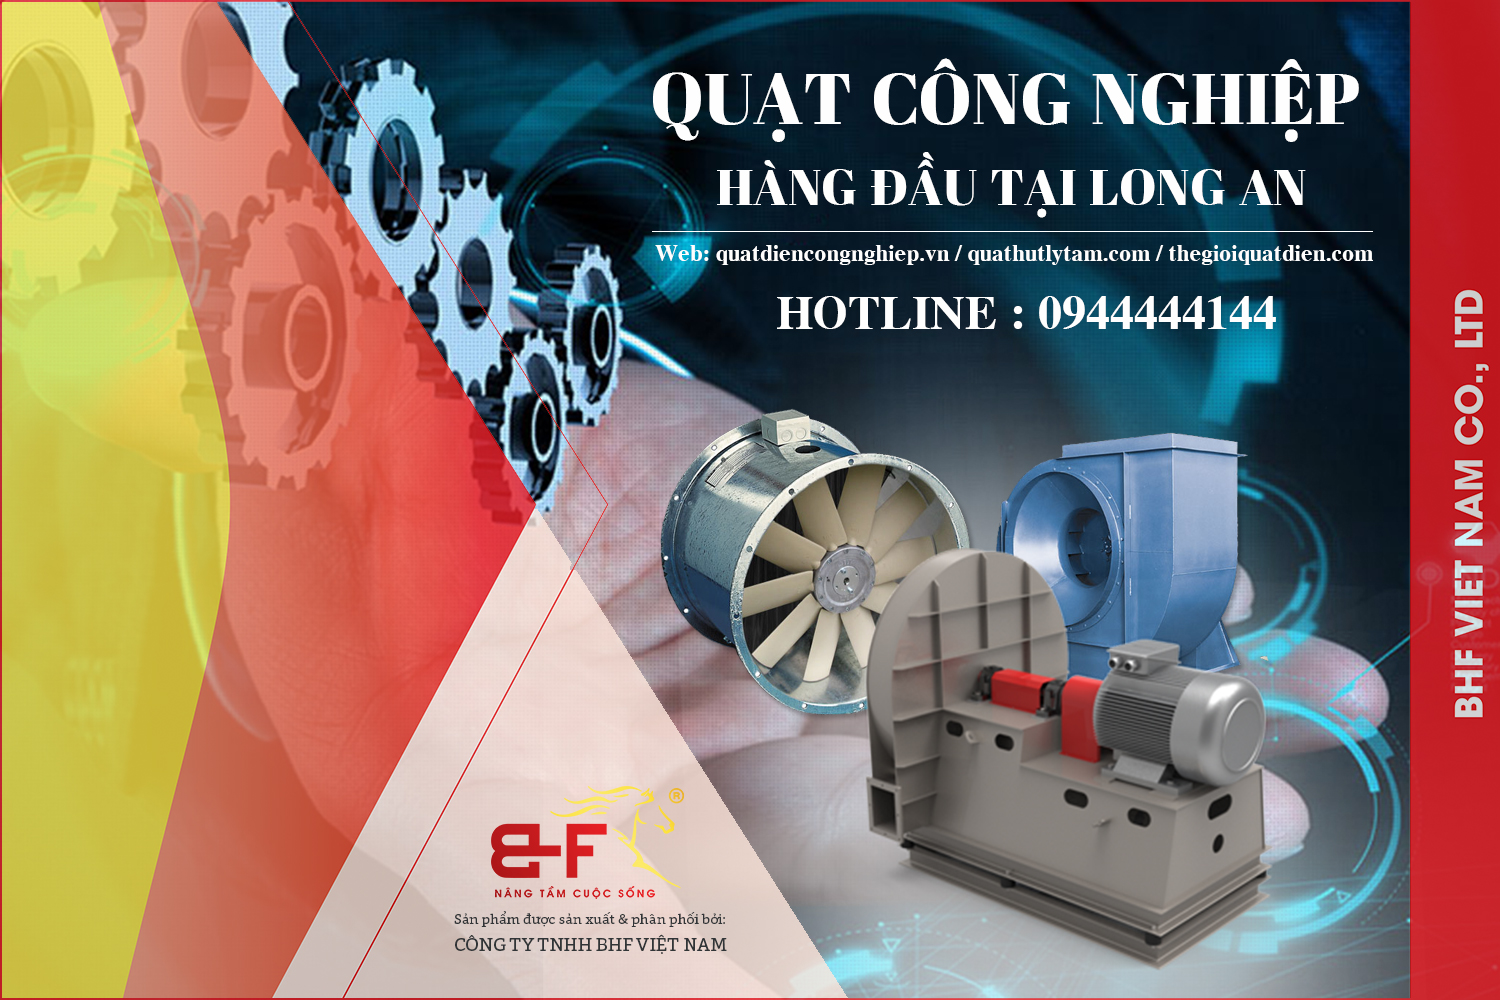 Công ty BHF Việt Nam chuyên cung cấp, thi công và lắp đặt quạt công nghiệp tại Long An